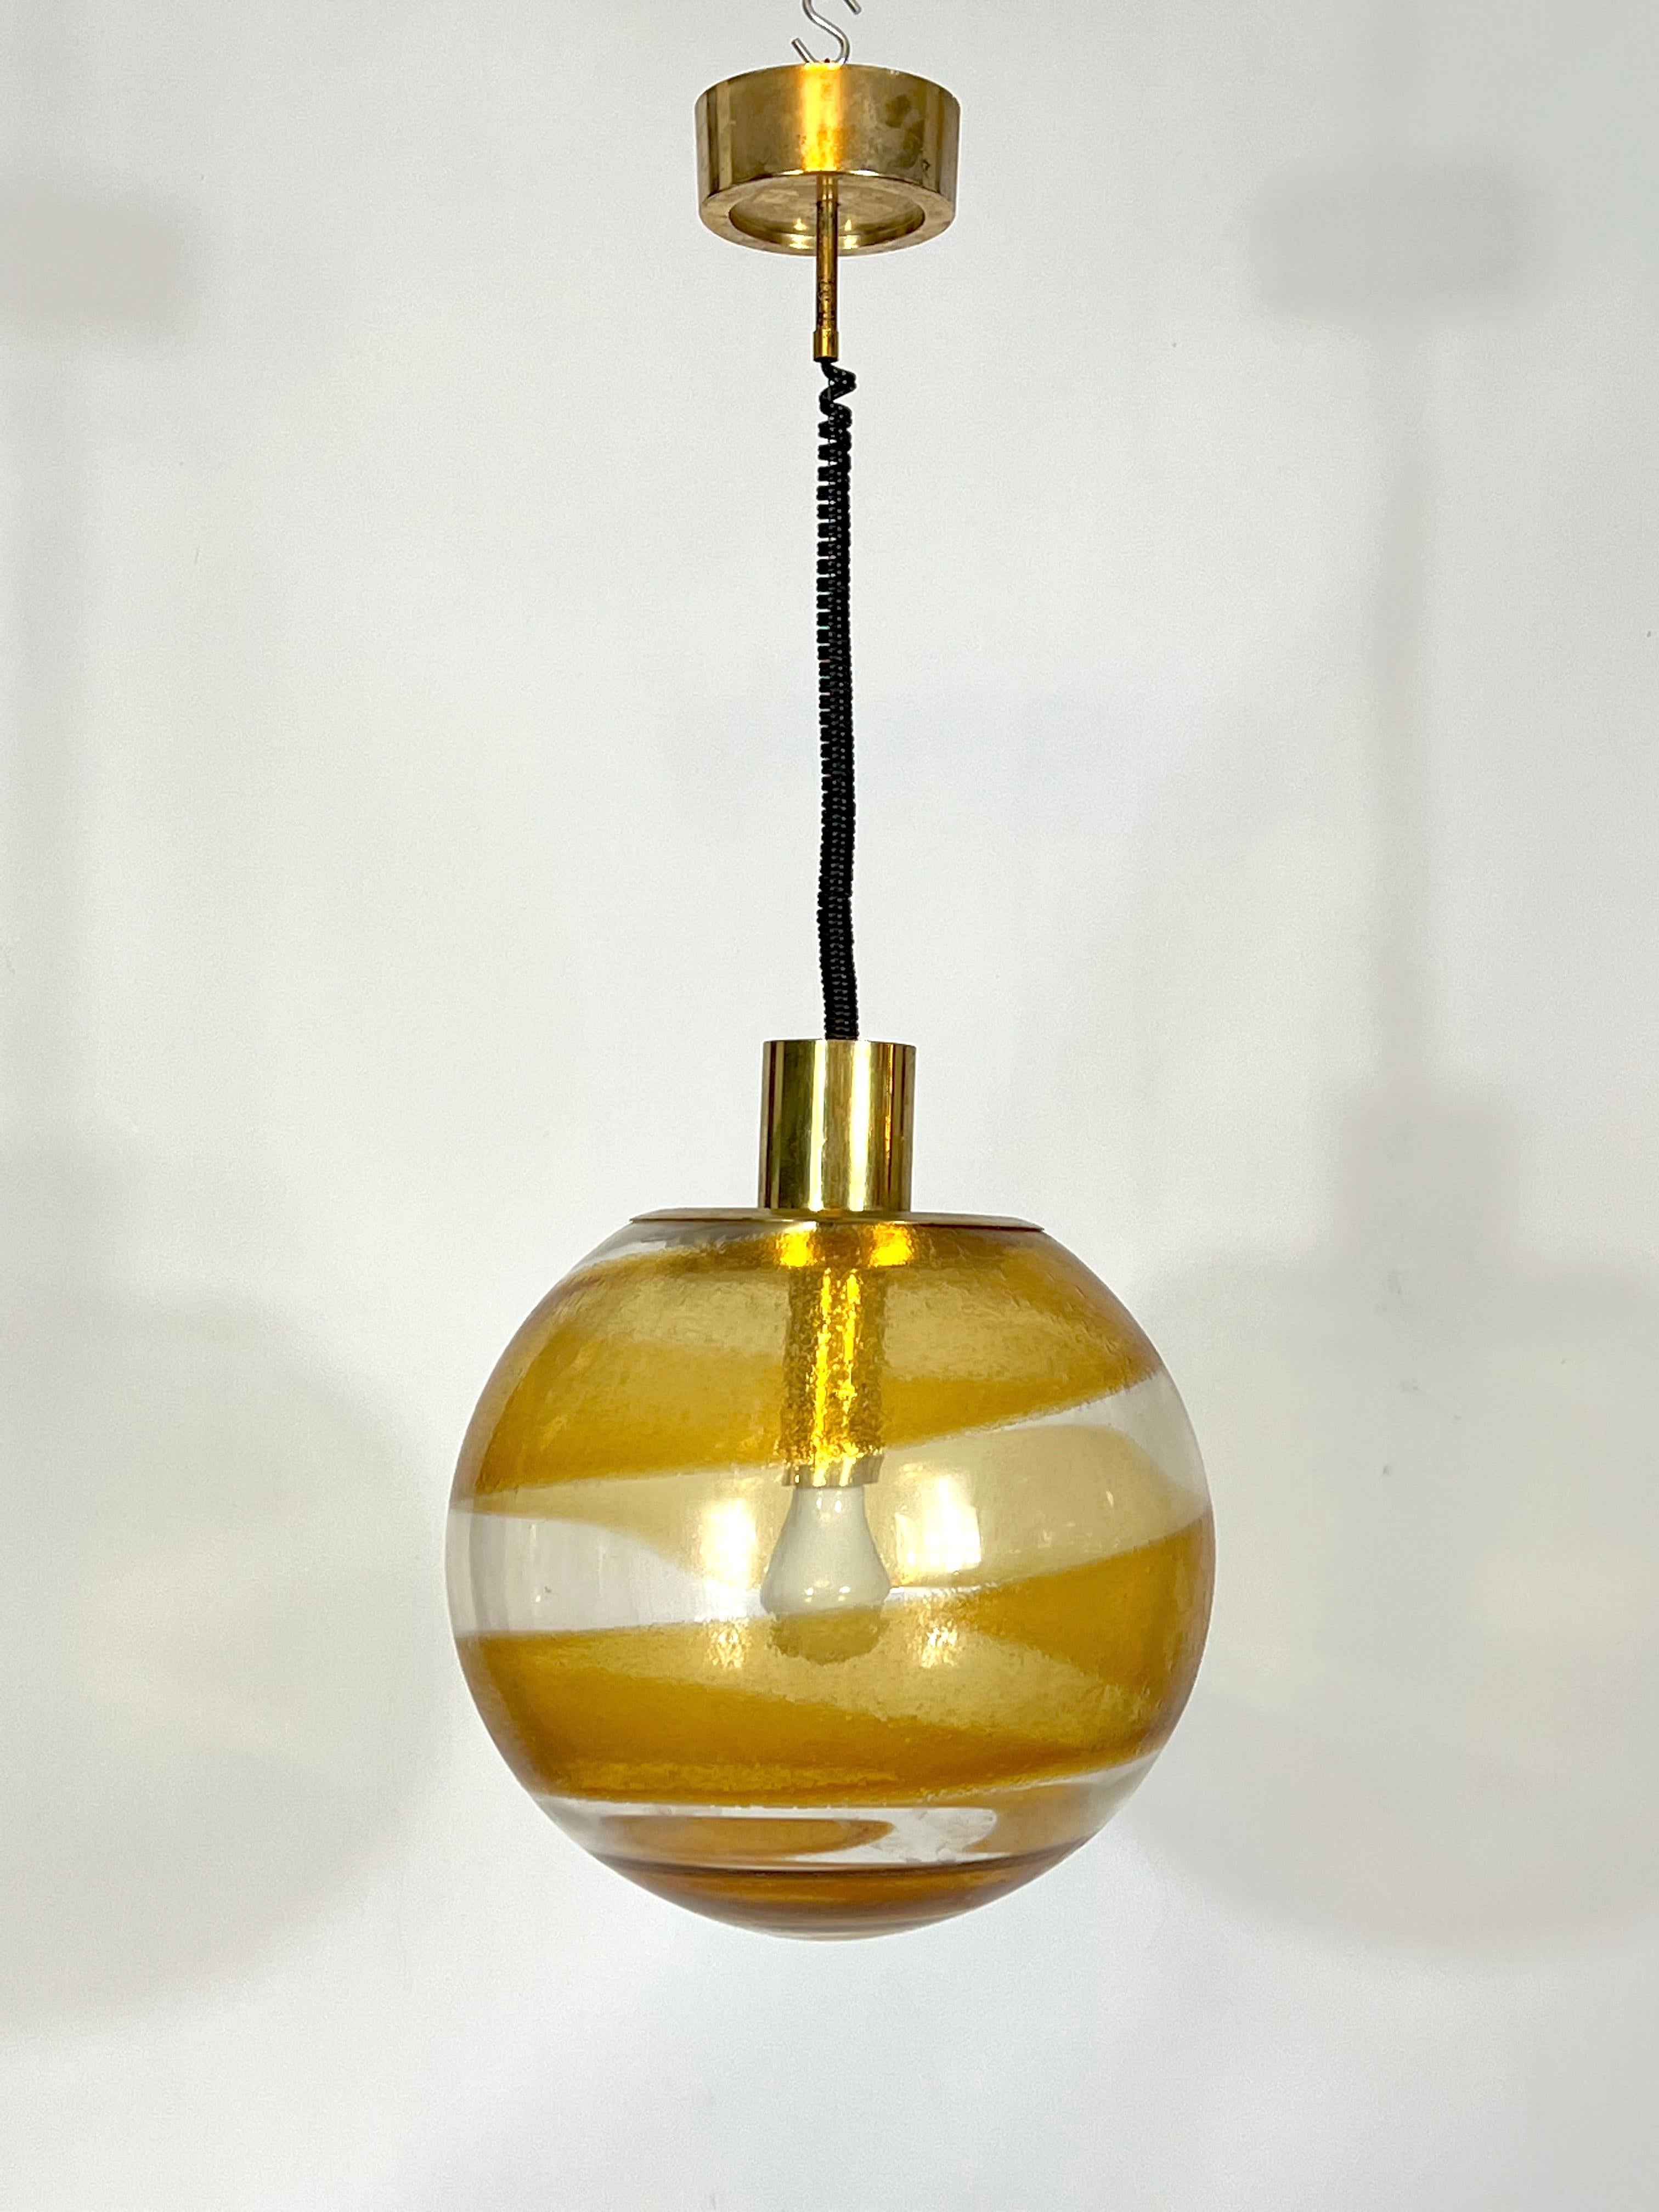 Bon état vintage pour cette lampe suspendue en verre de Murano et laiton. Fonctionne entièrement avec la norme européenne, adaptable sur demande à la norme américaine.